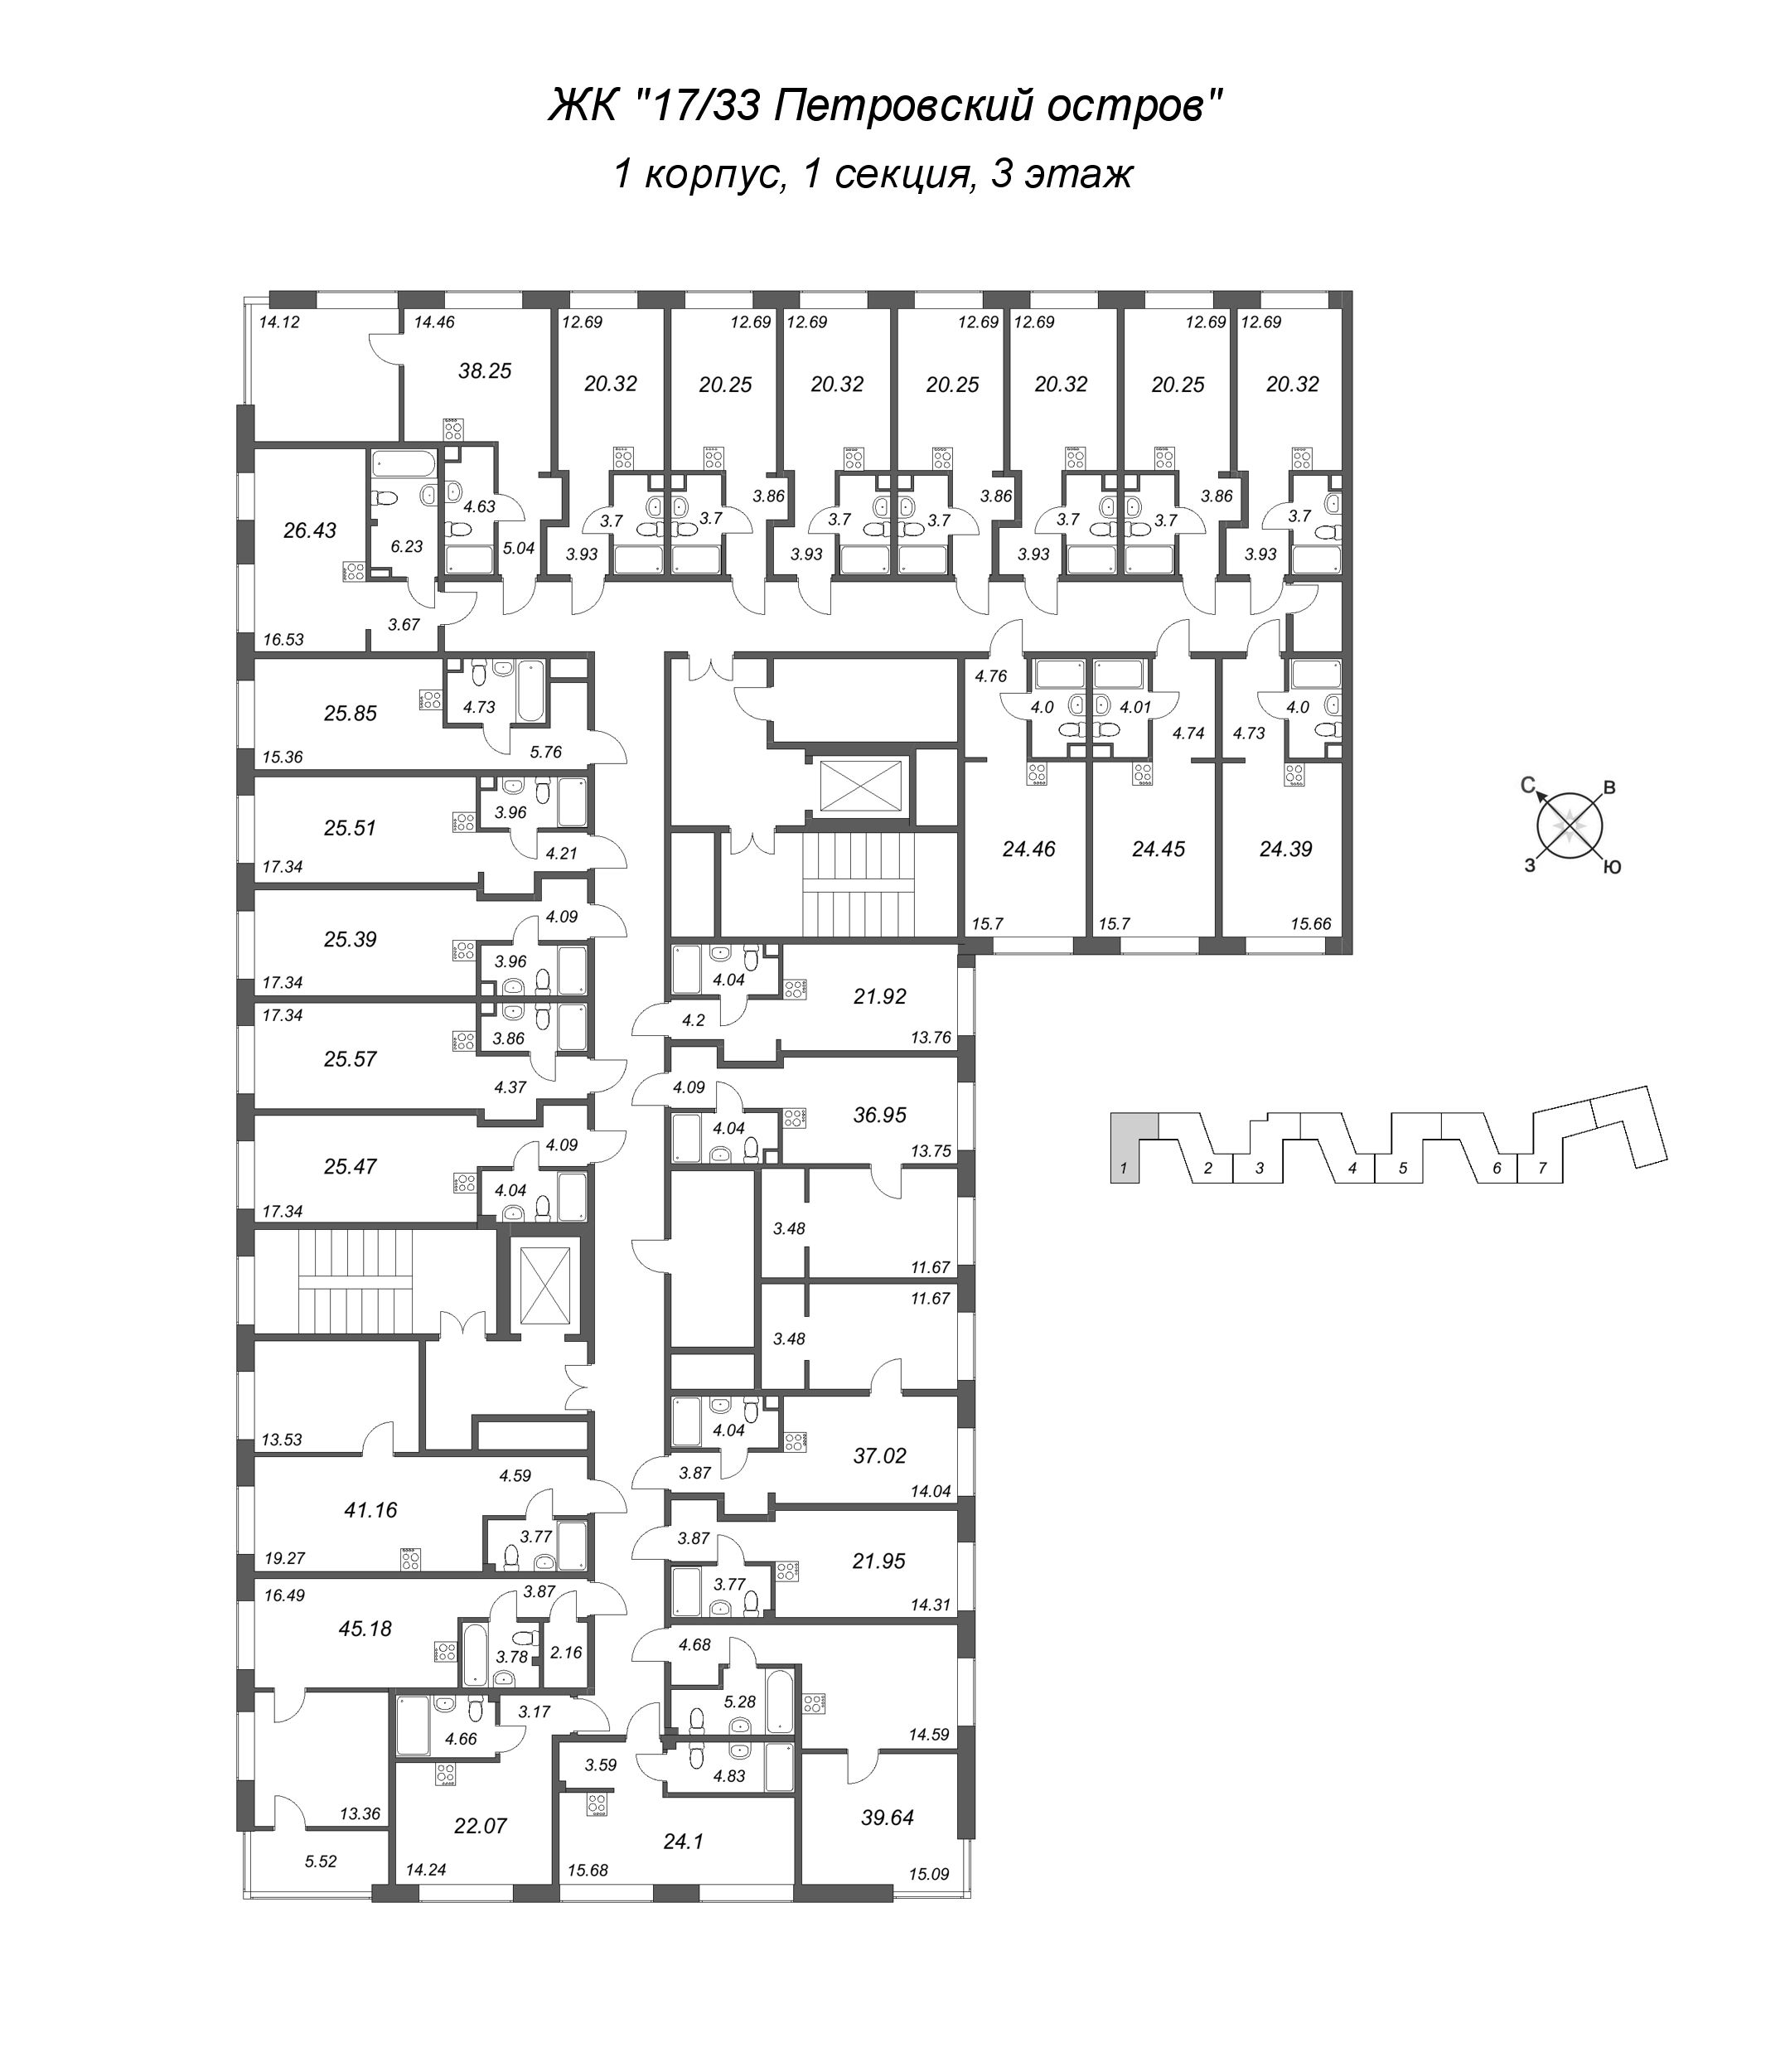 1-комнатная квартира, 39.64 м² в ЖК "17/33 Петровский остров" - планировка этажа